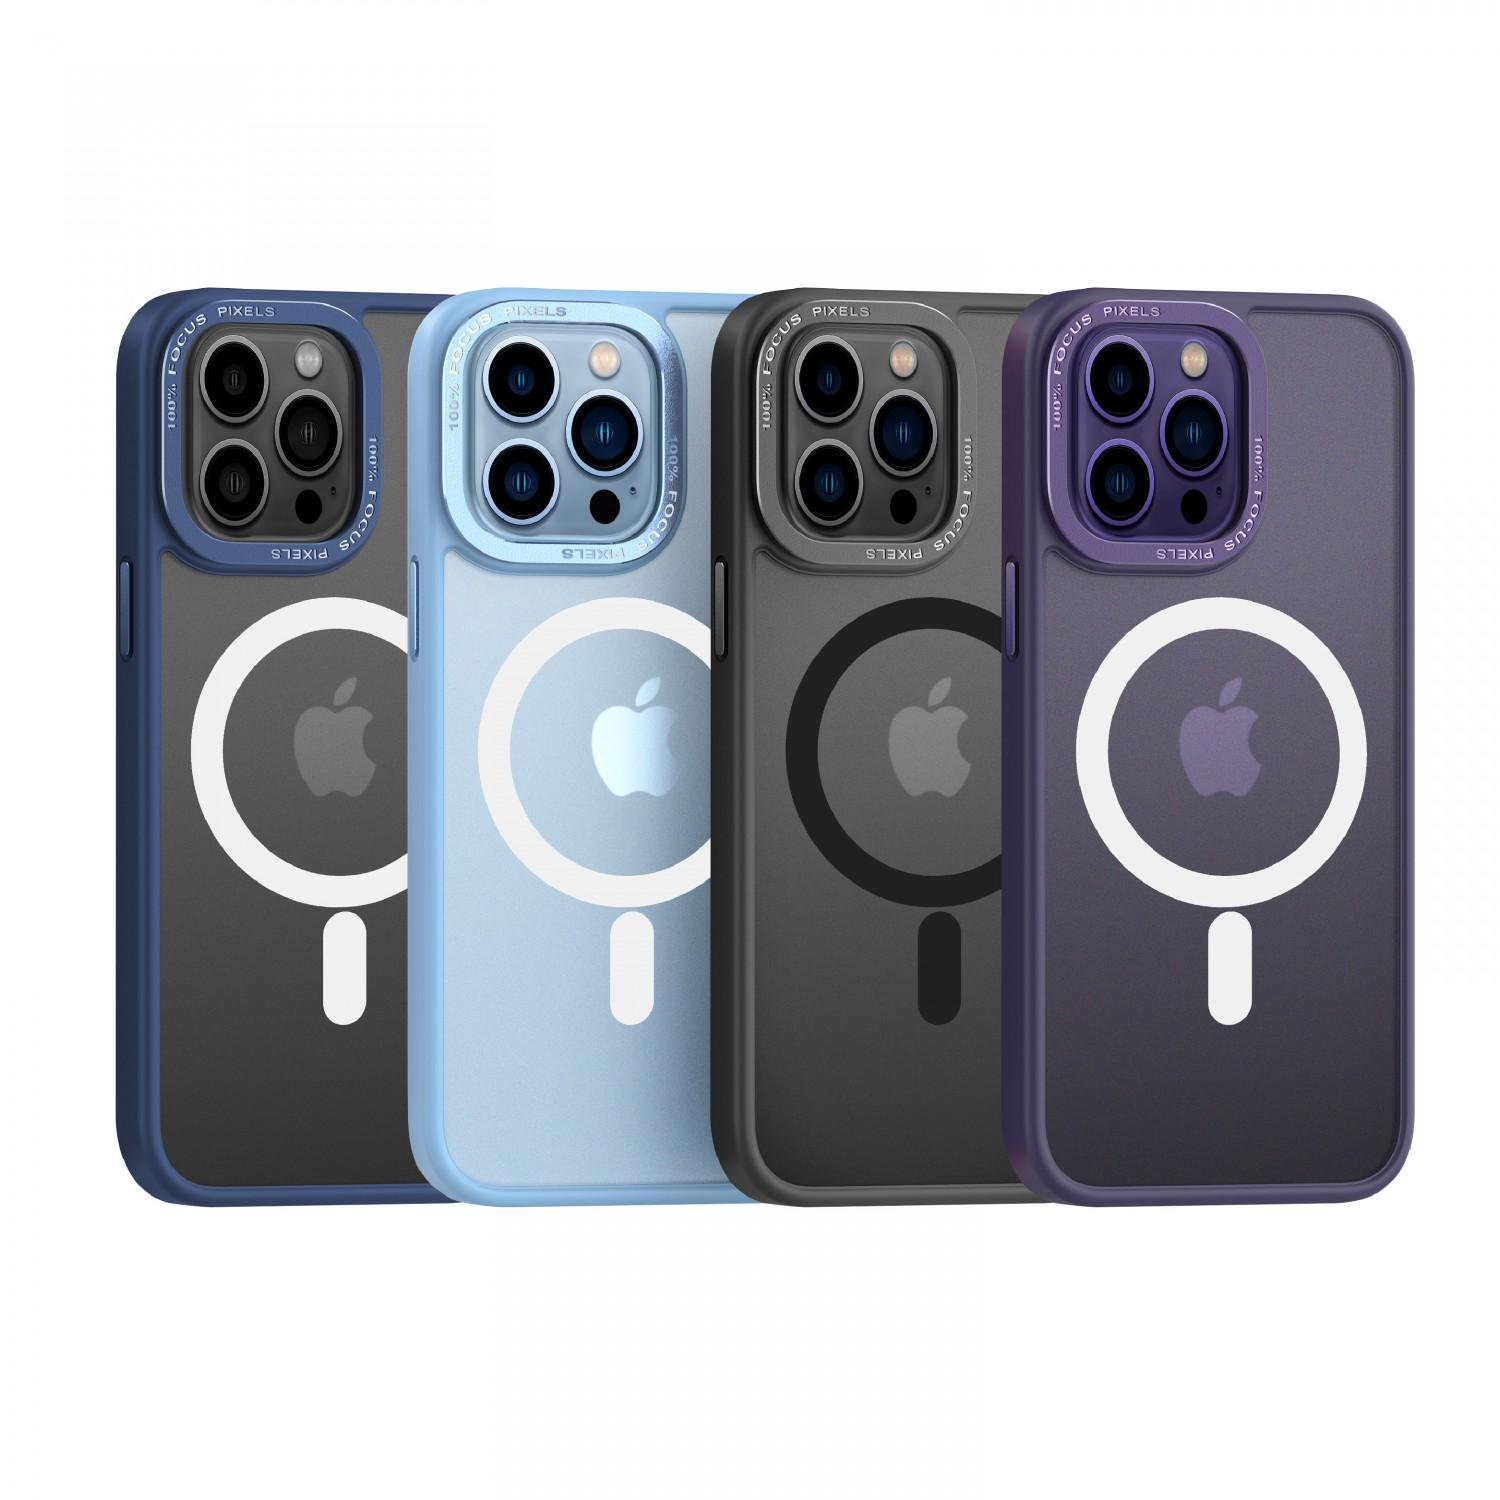 كفر جوال ايفون 14 برو ماج سيف معدني ارجواني من كوما Comma Joy Elegant Metal Magnet Anti Shock Case for iPhone 14 Pro ( 6.1" ) Purple